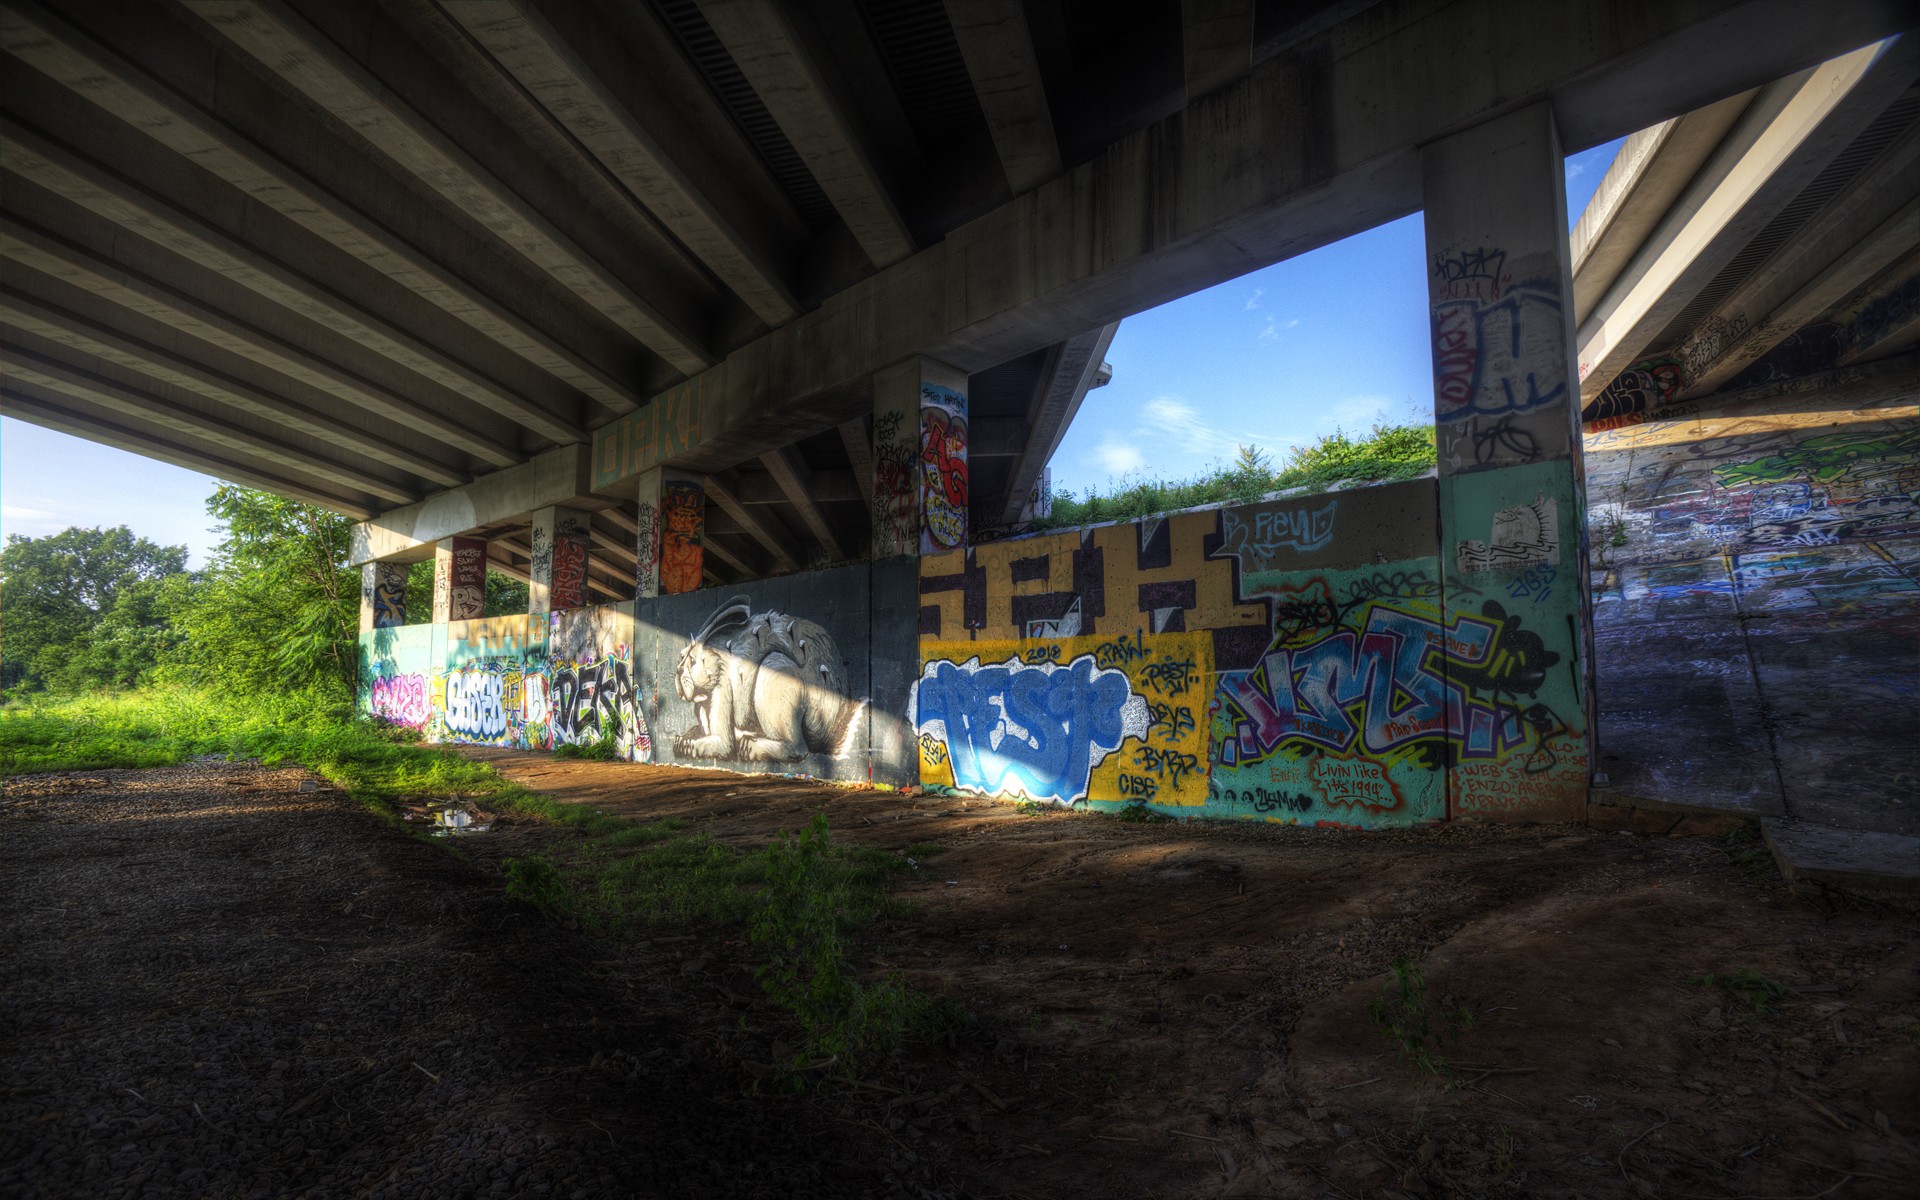 graffiti, urban, overpass - desktop wallpaper